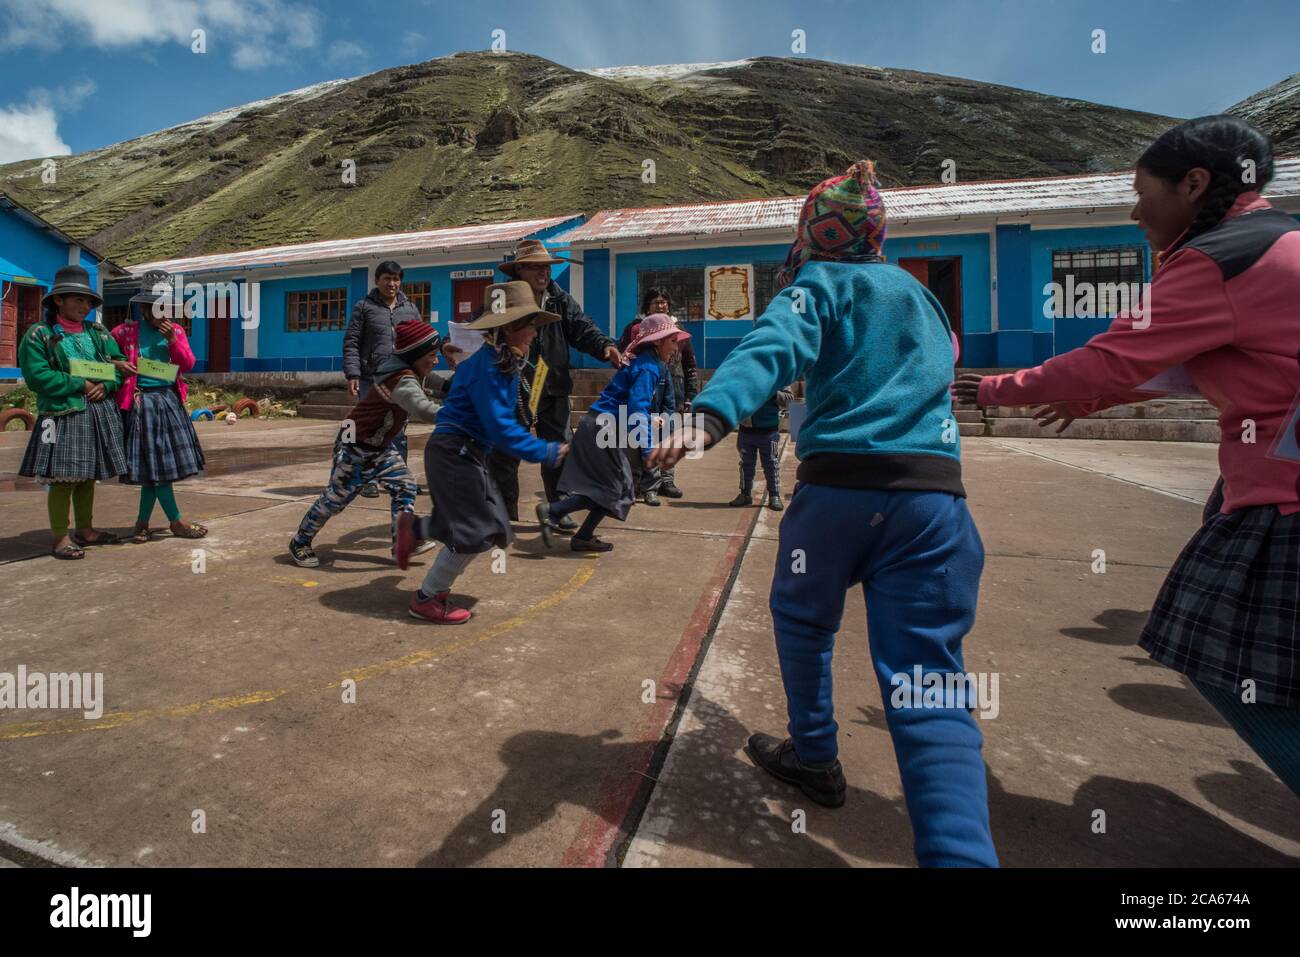 Enfants quechua jouant dehors dans une petite école rurale dans la Cordillera Vilcanota dans les Andes du Pérou. Banque D'Images